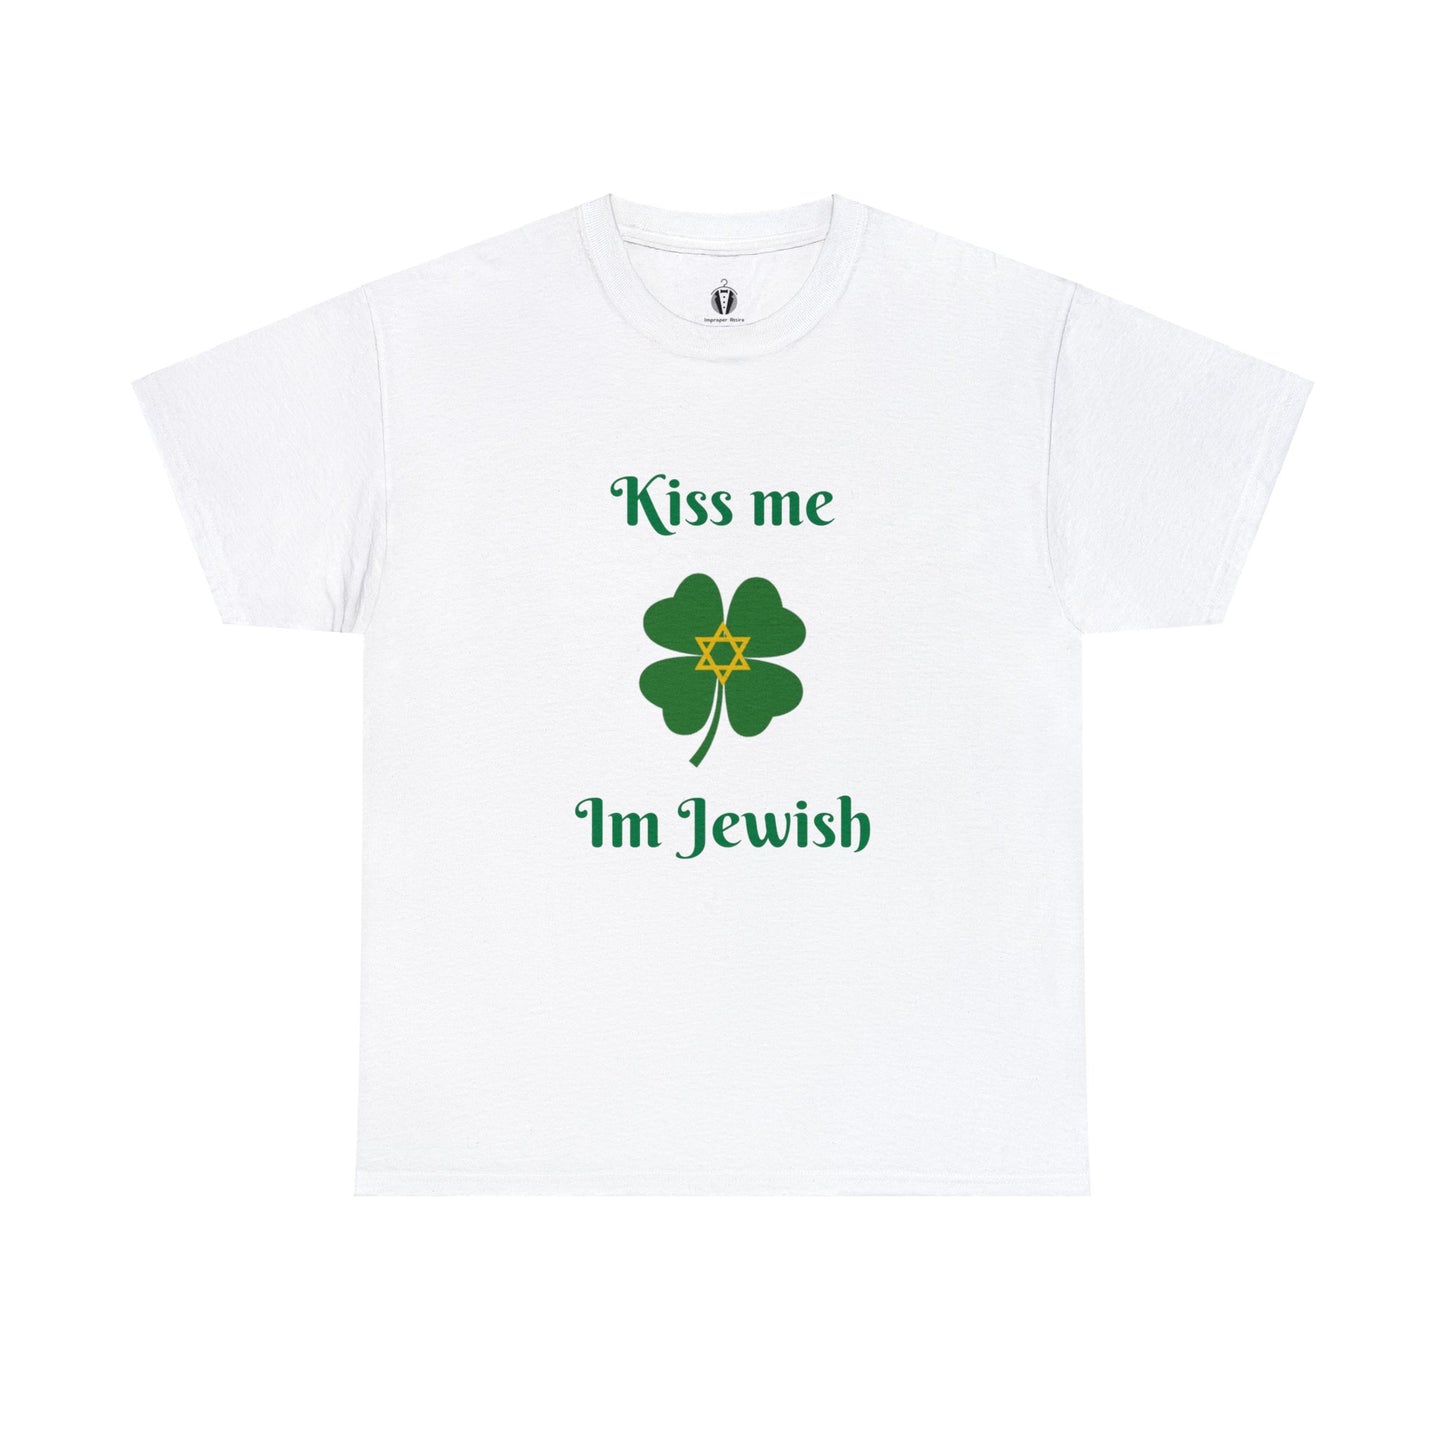 "Kiss me I'm Jewish" - Tee